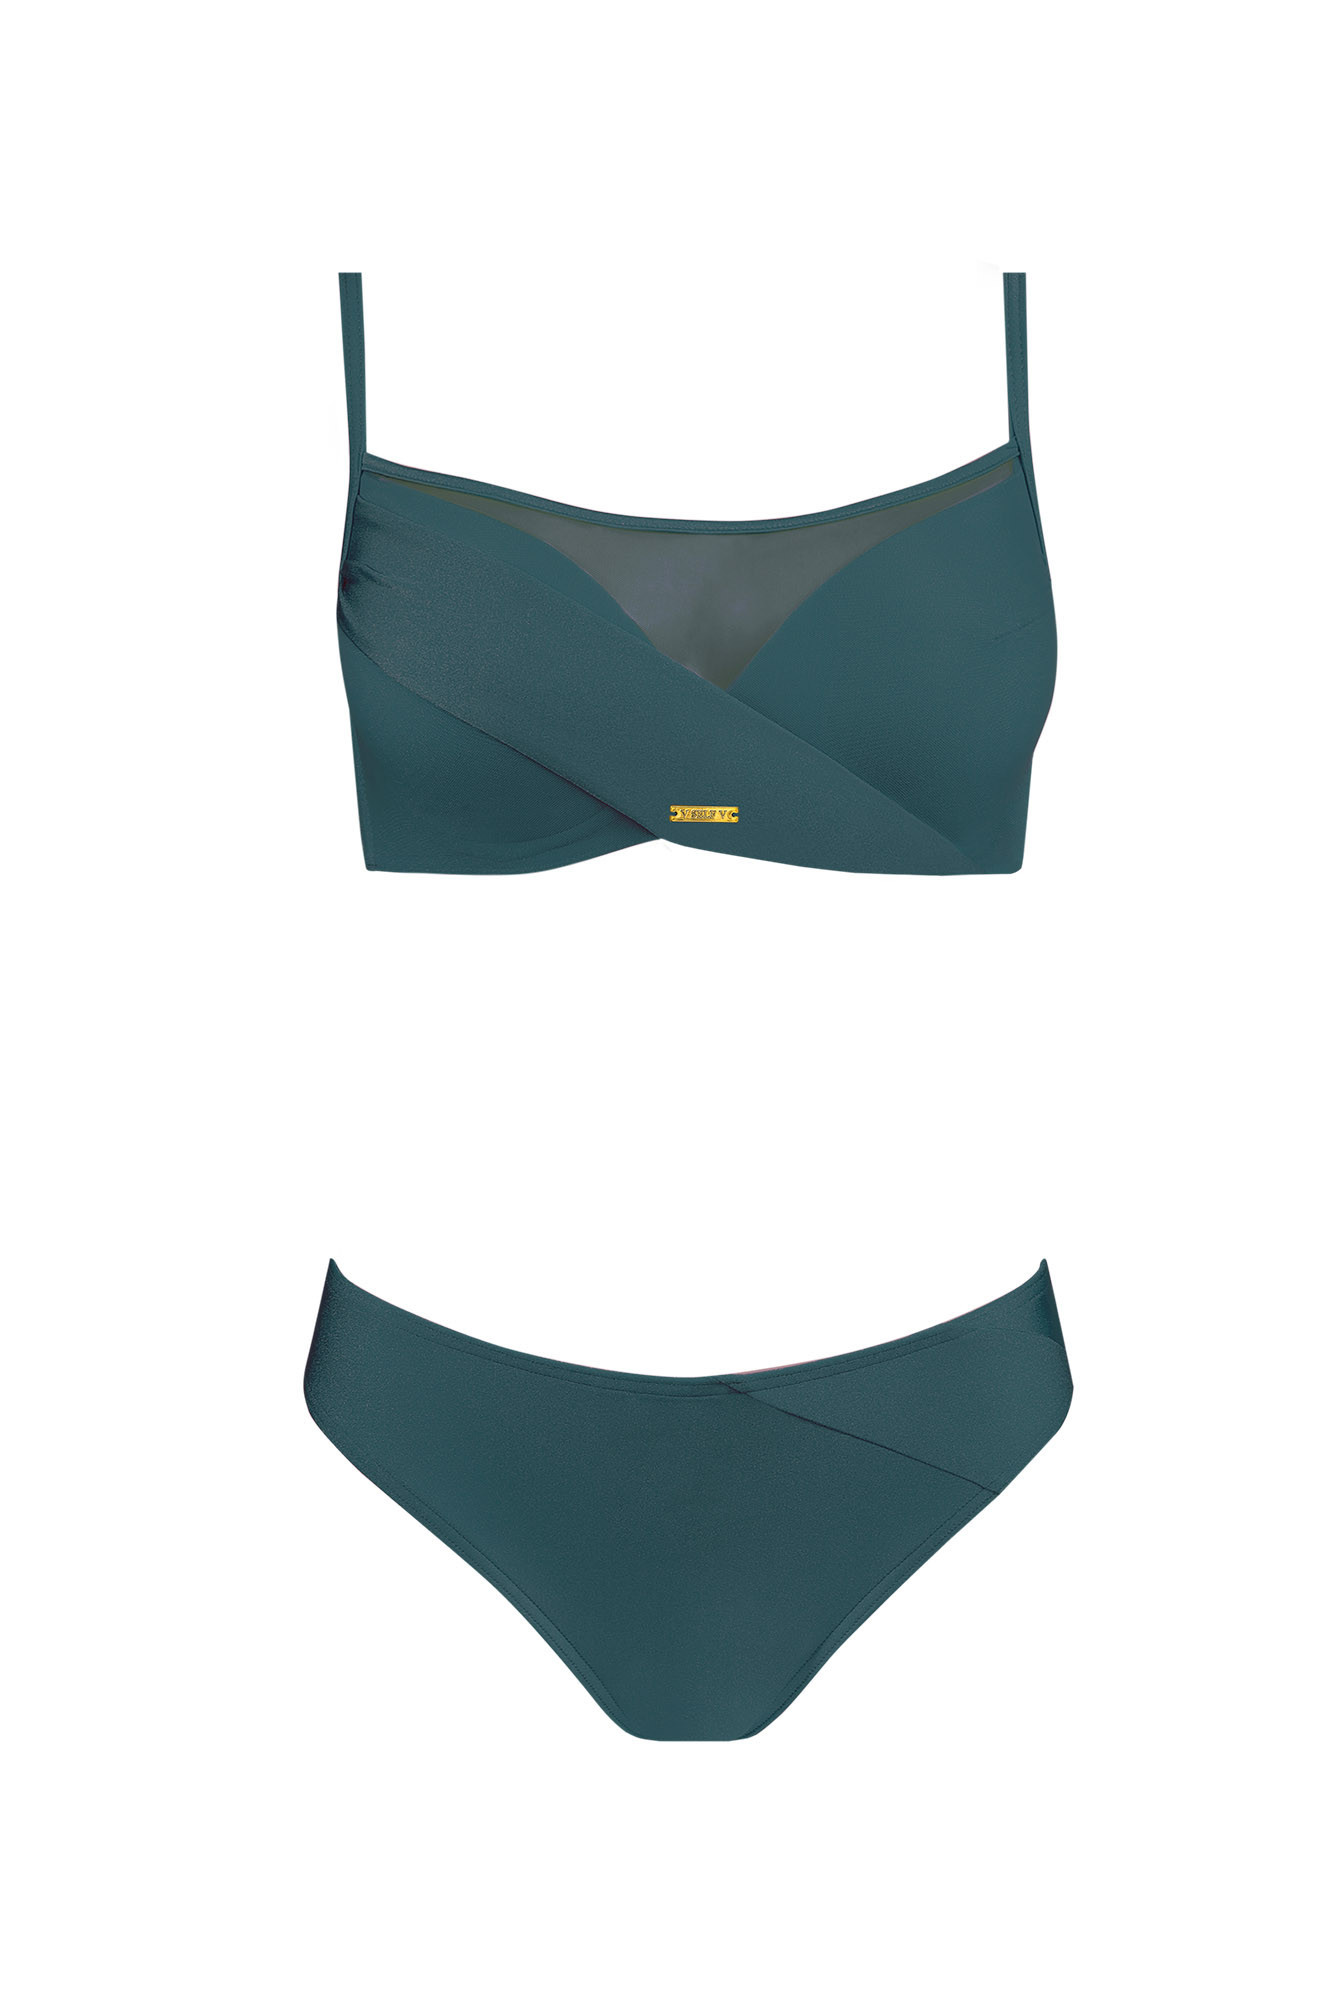 Dámské dvoudílné plavky Fashion10 S1002N-7 tm. zelené - Self 42C